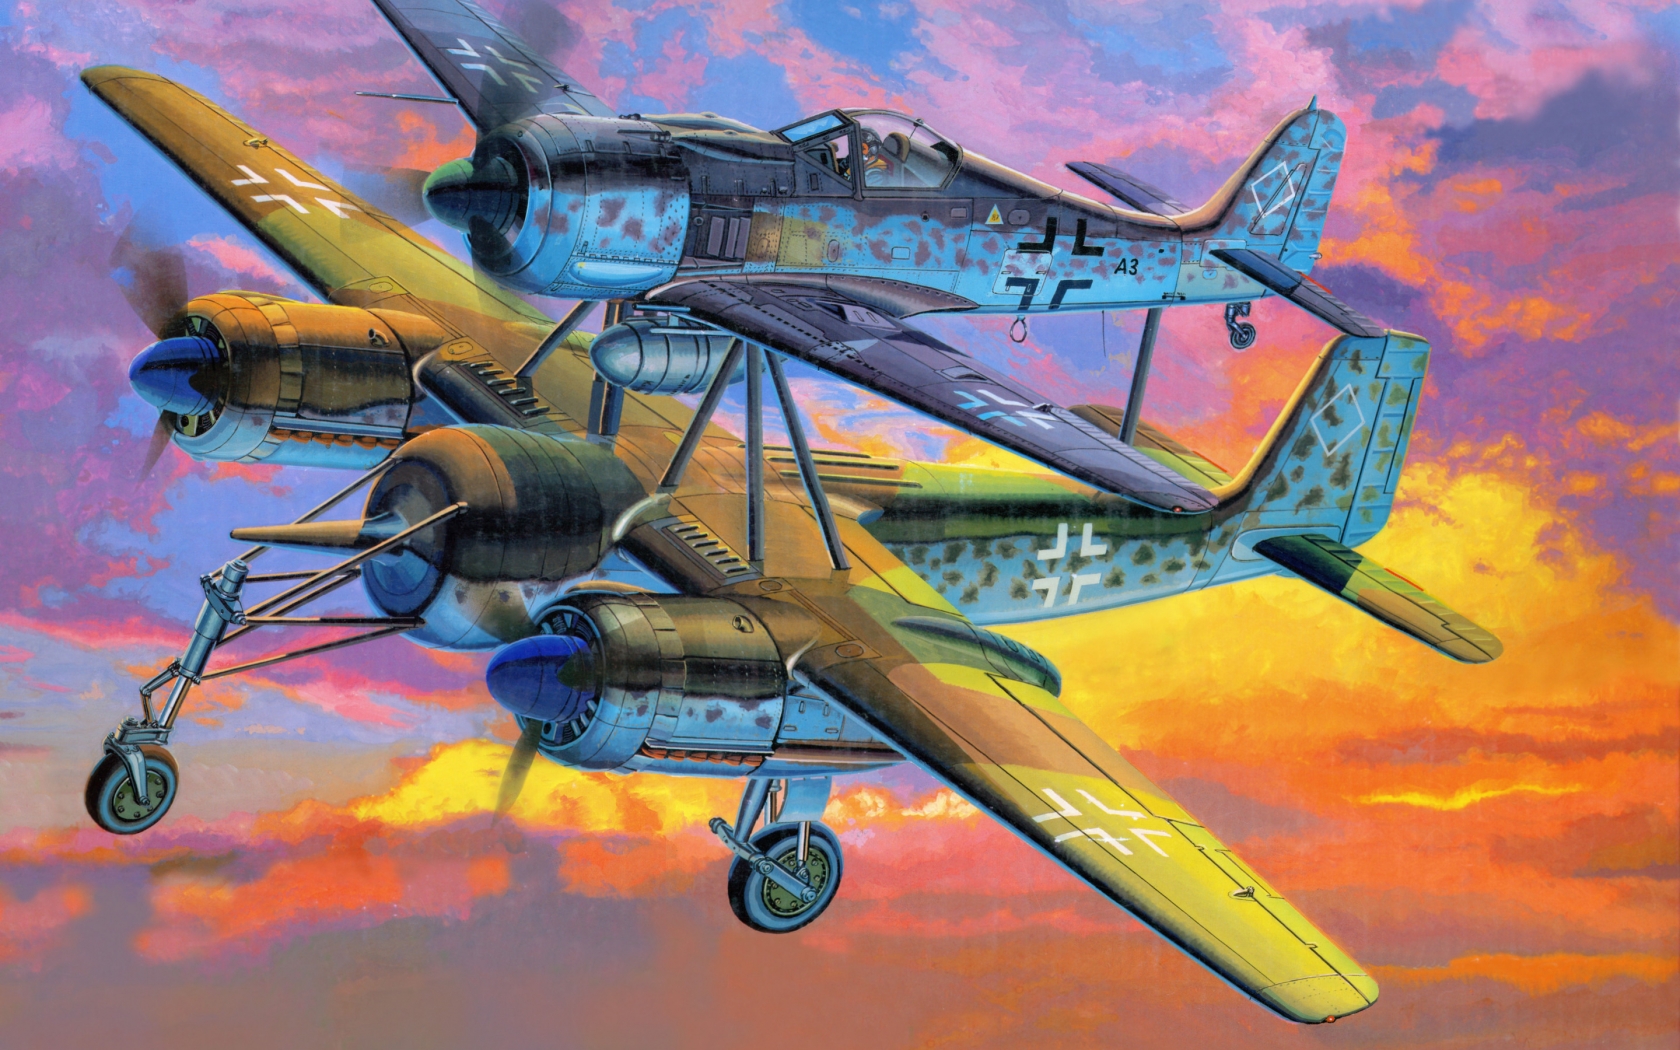 Focke Wulf Fw 190 Mistel for 1680 x 1050 widescreen resolution